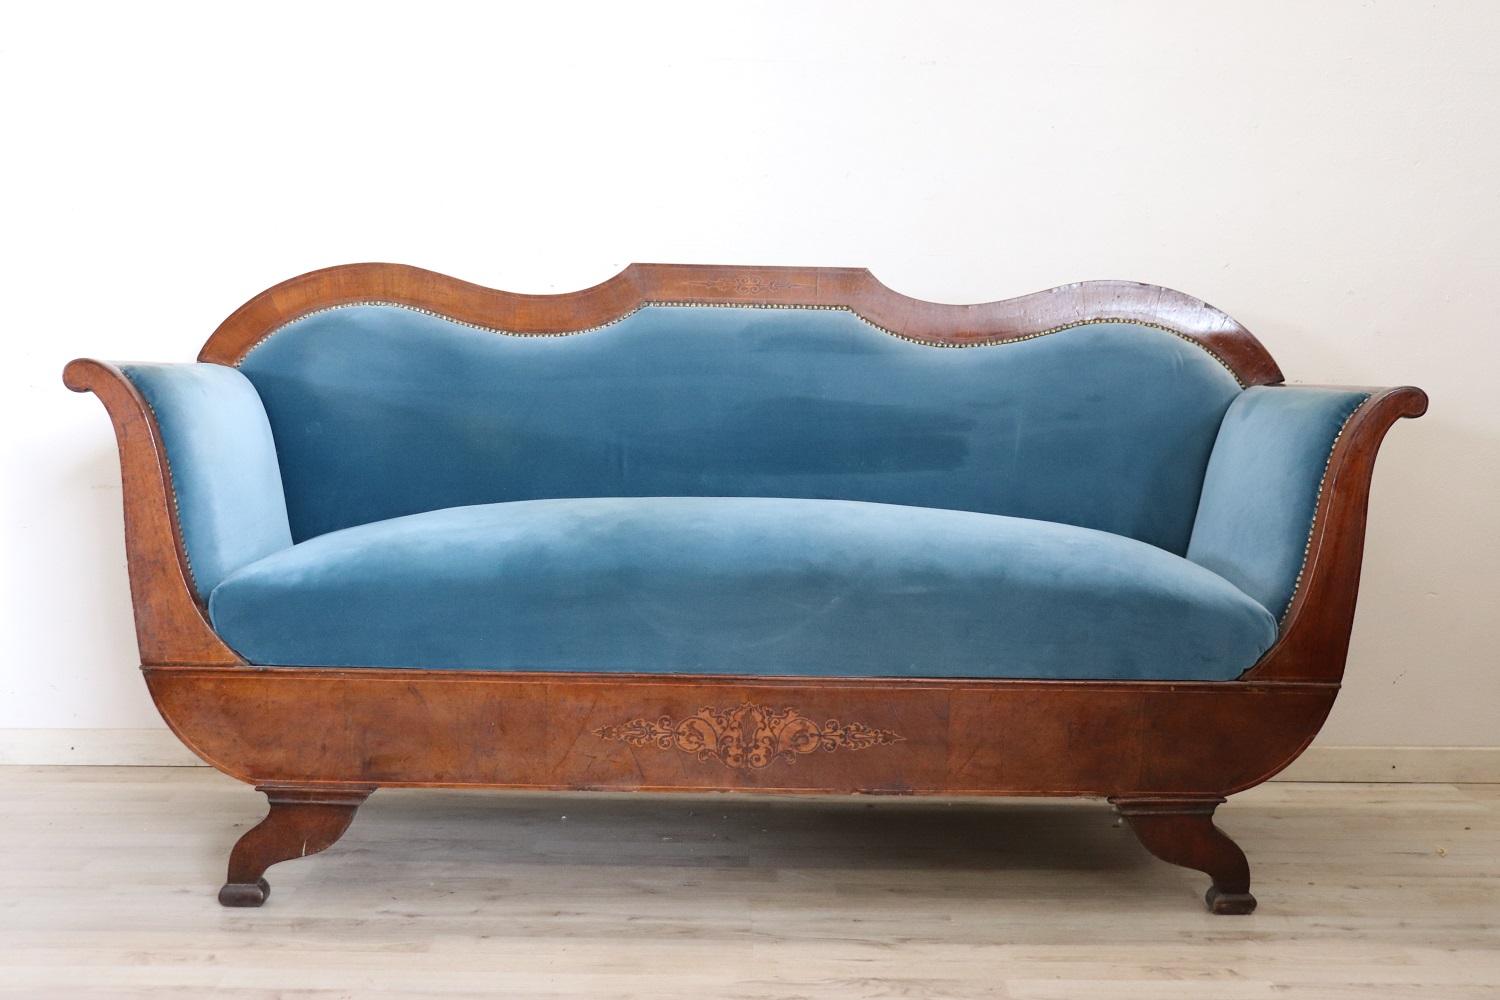 Antikes Sofa aus der Zeit Karls X. um 1825. Das Sofa ist aus massivem Nussbaumholz mit raffinierten Intarsienverzierungen gefertigt. Eine besondere Form, die als Boot bezeichnet wird. Das Sofa ist mit elegantem blauem Samt gepolstert, perfekt